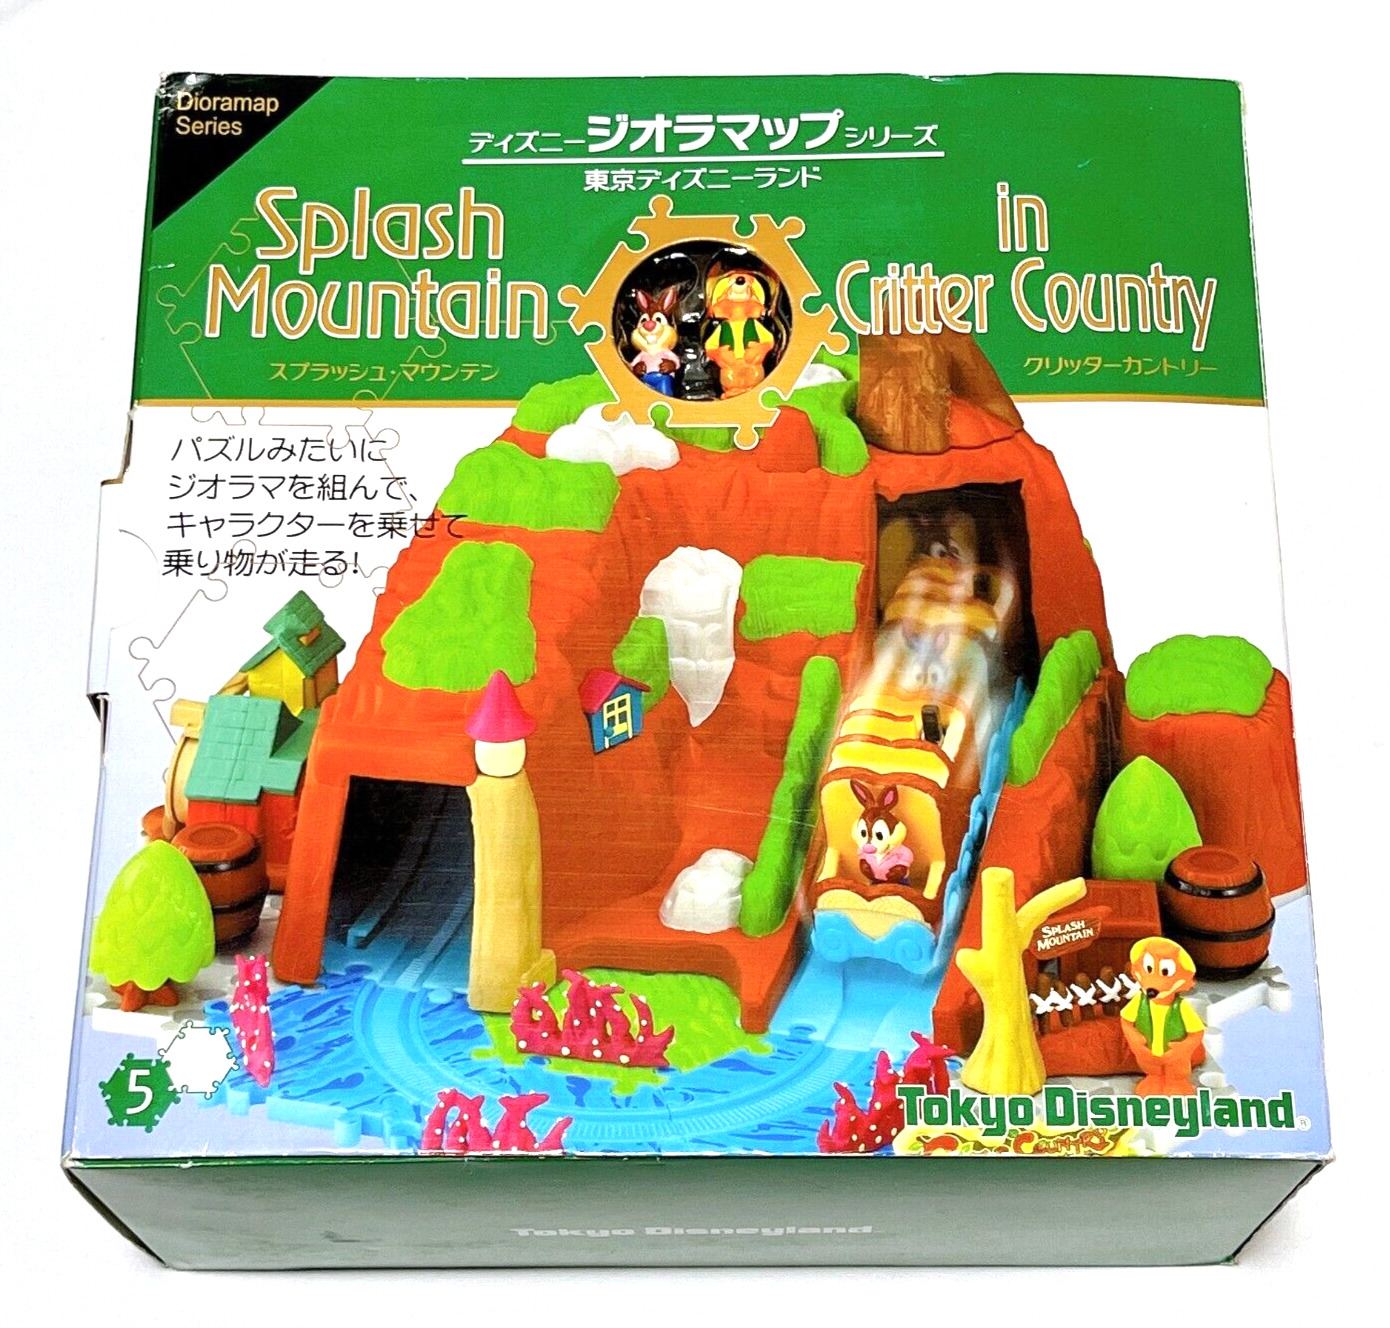 Splash Mountain Tokyo Disneyland Diorama Mechanical toy Rare from JAPAN